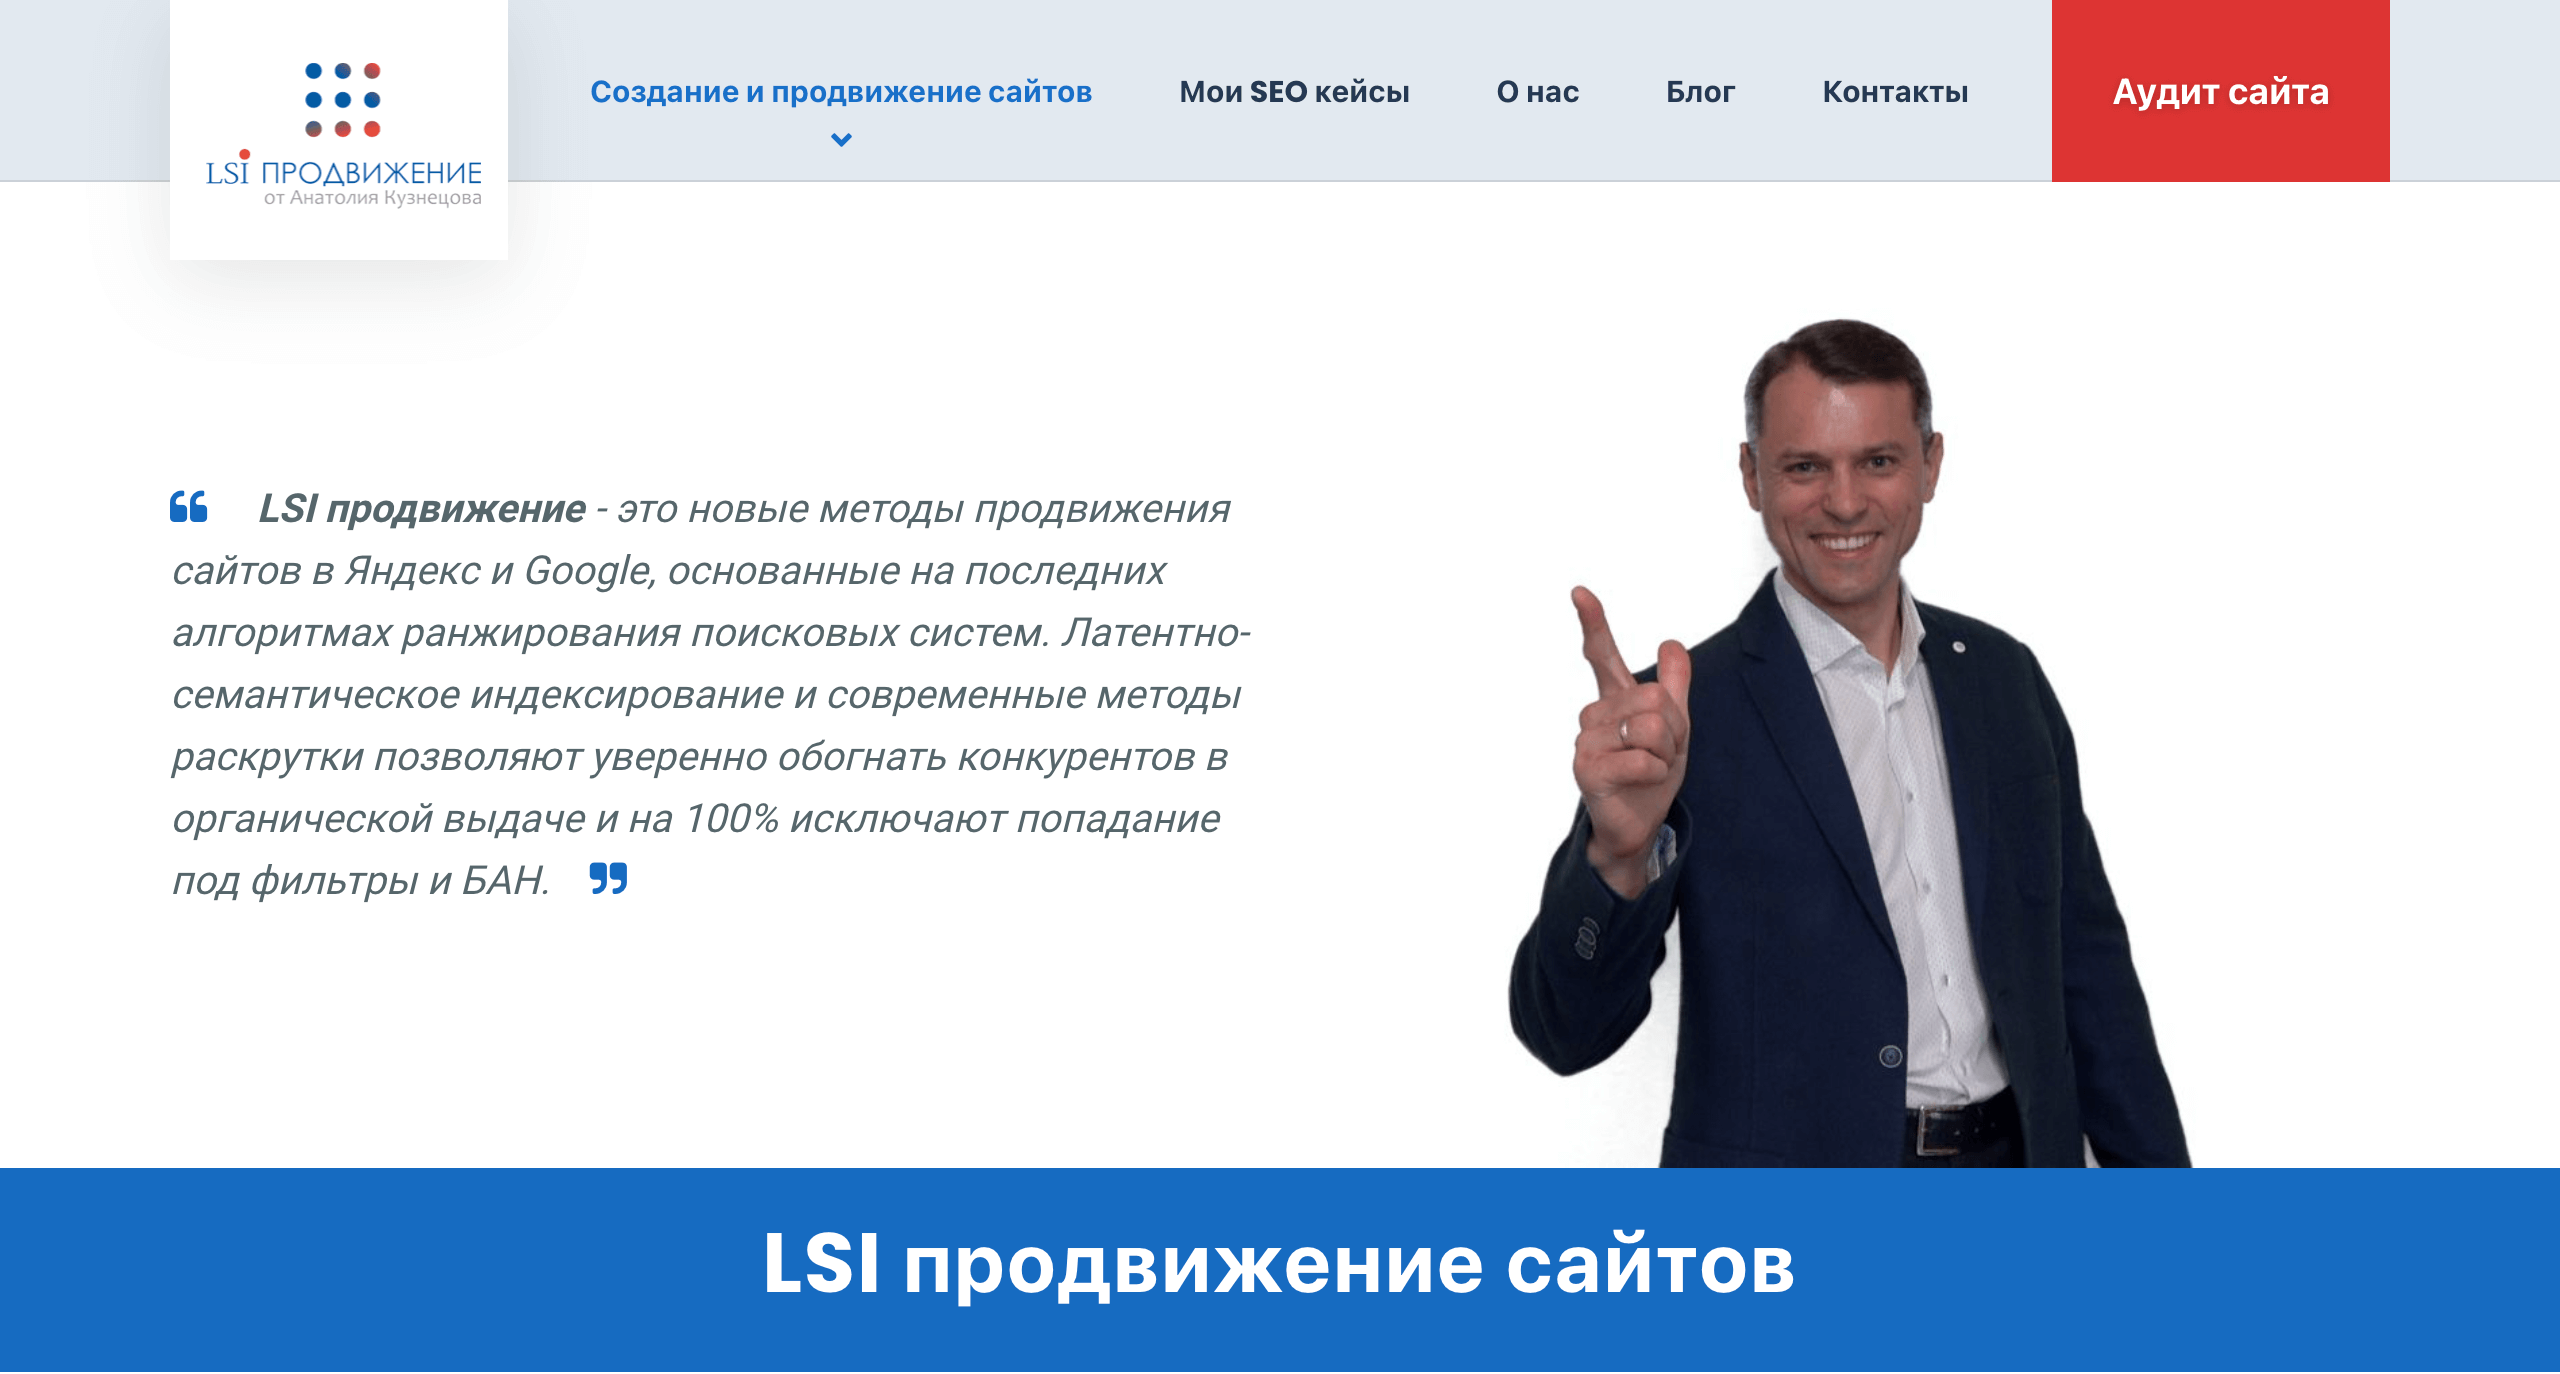 SEO продвижение сайта в Санкт-Петербурге по LSI продвижению